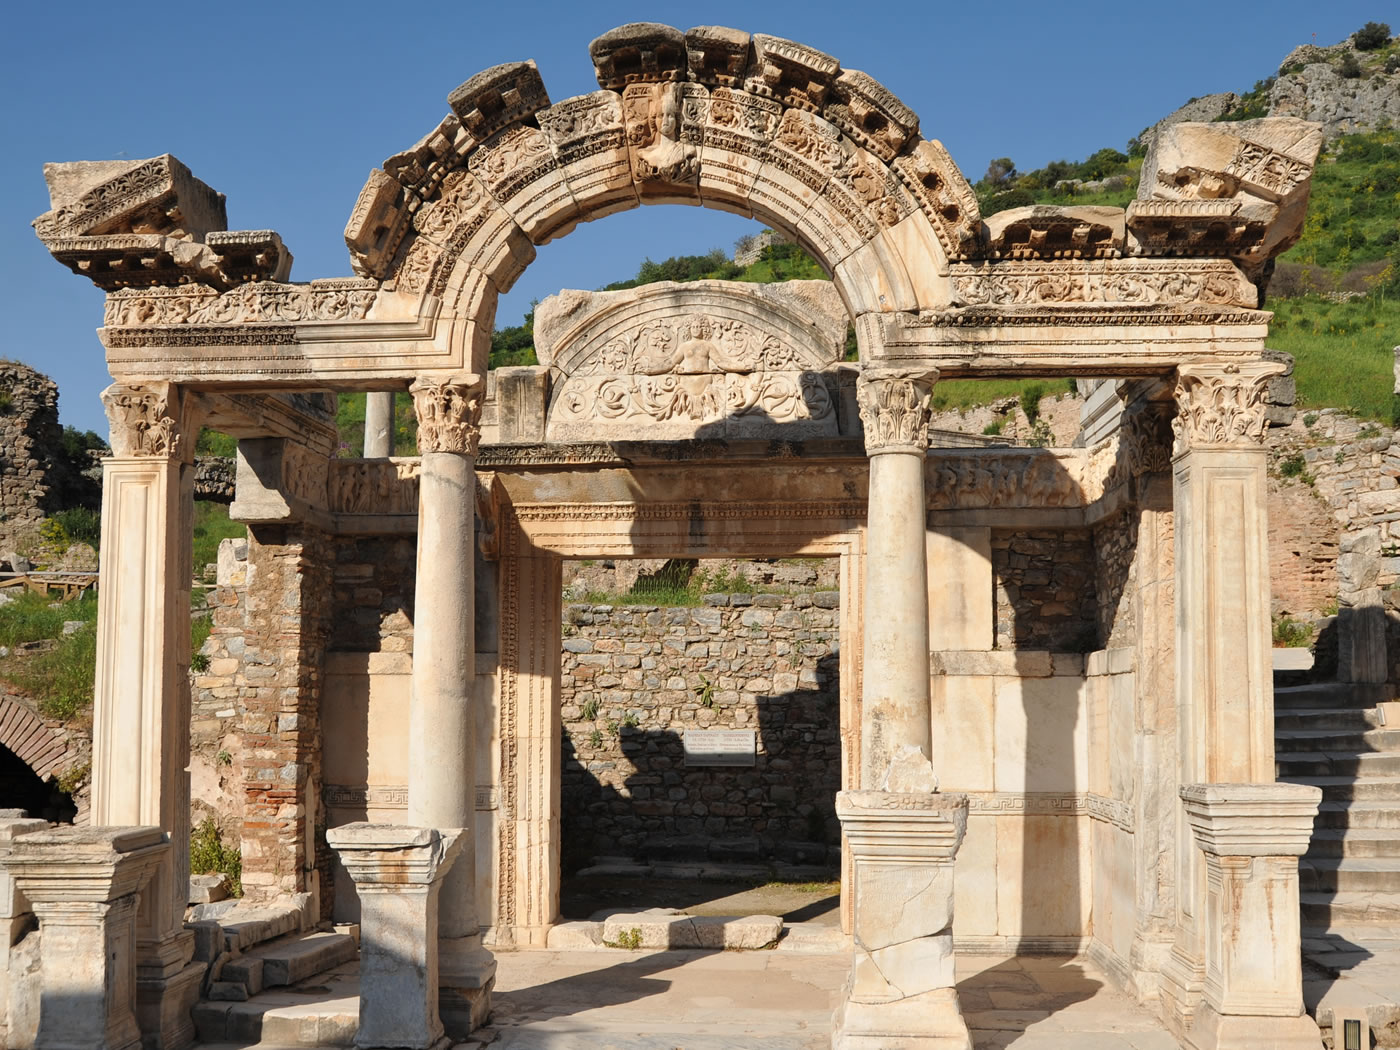 Private Ephesus Tour From Izmir